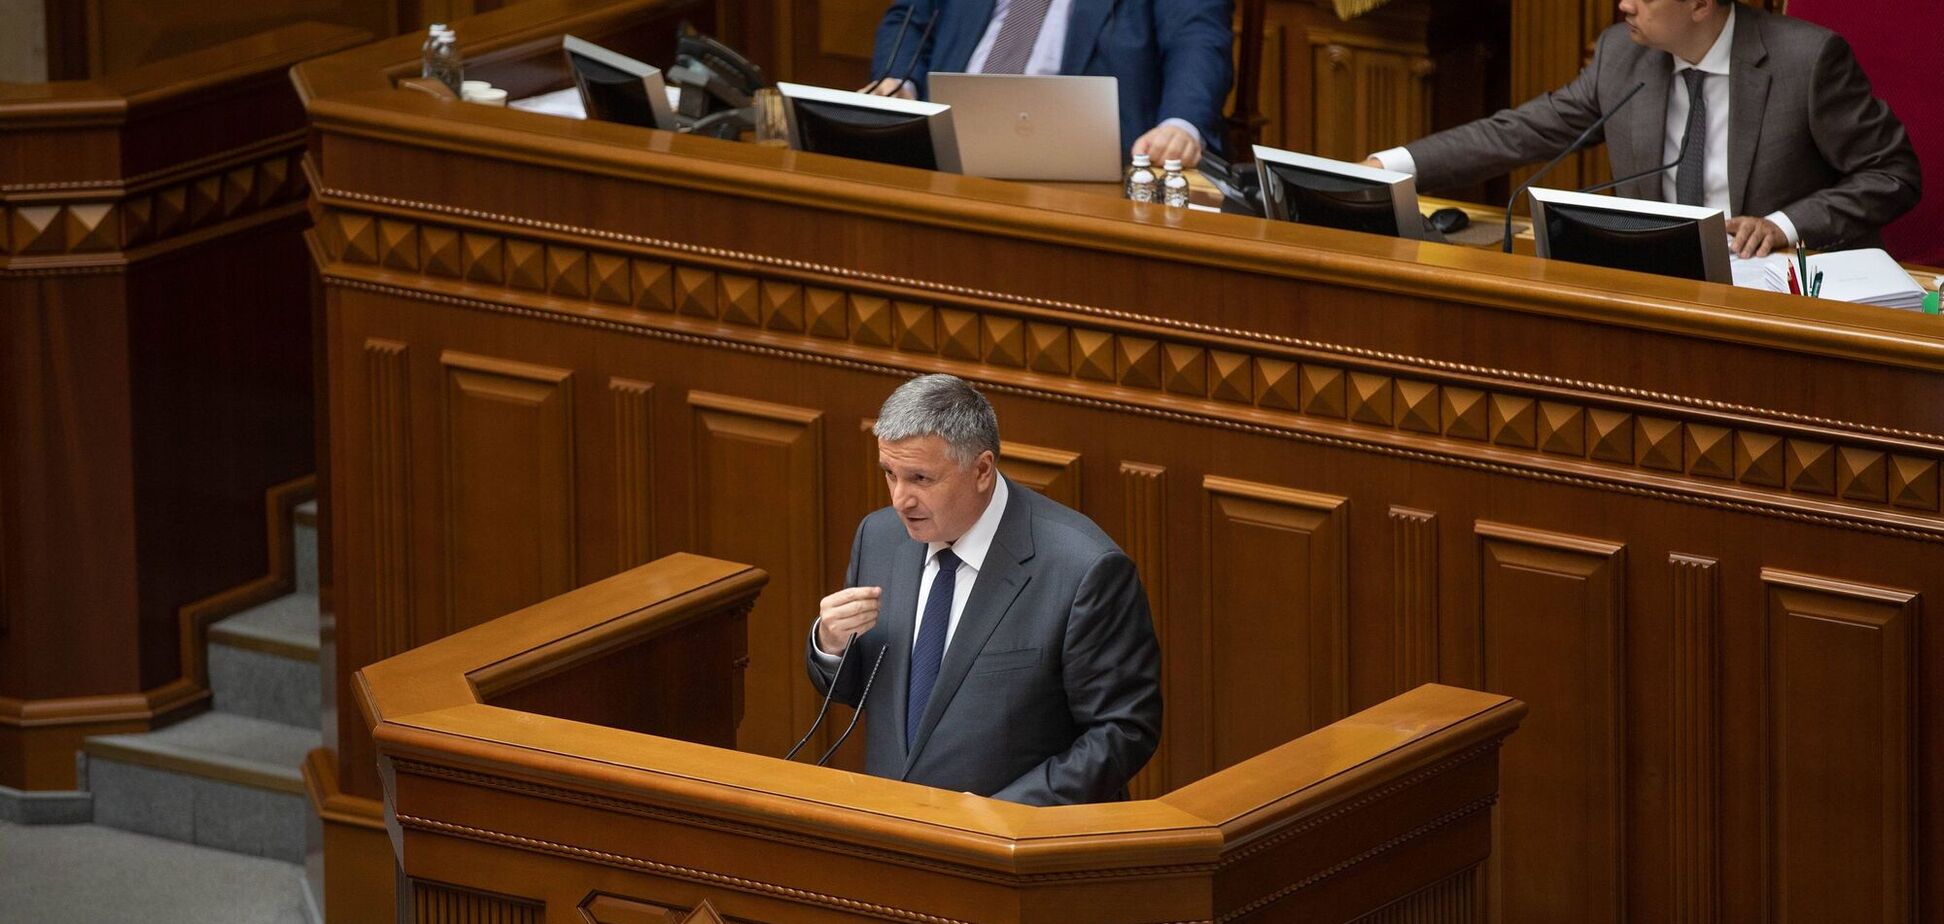 Украина и Франция заключили четыре соглашения на более 1 млрд грн: Аваков раскрыл детали